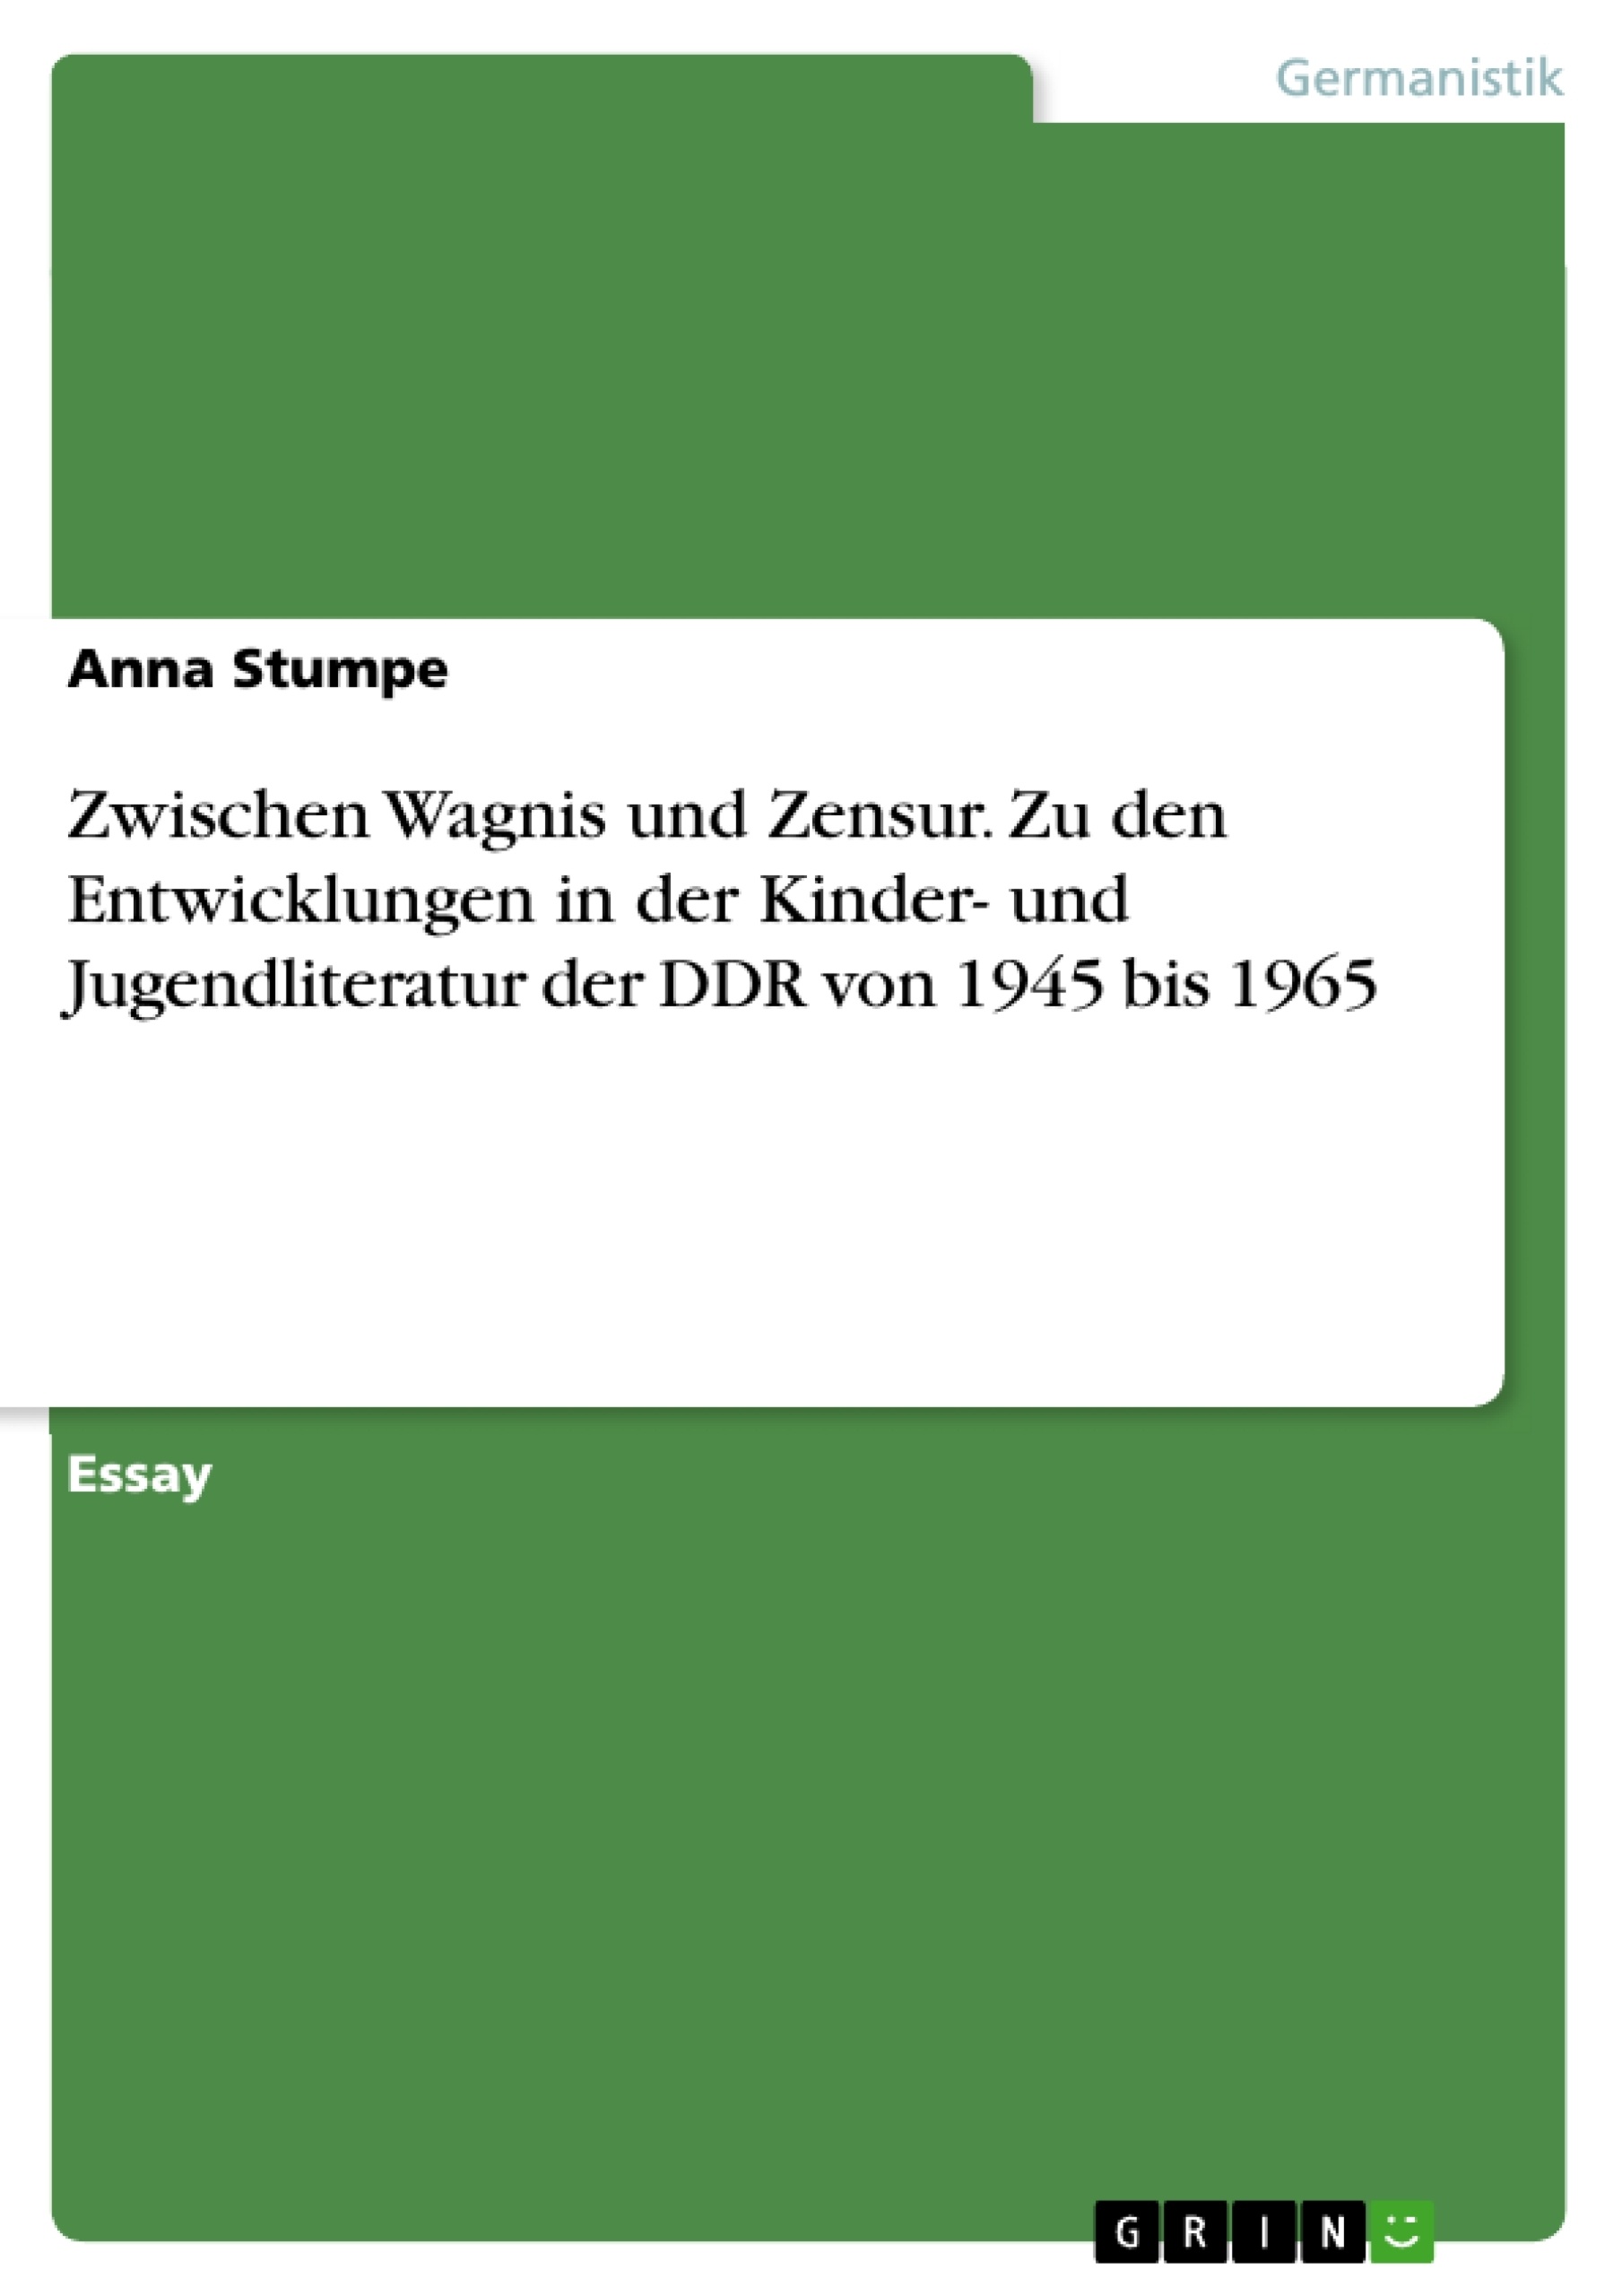 Title: Zwischen Wagnis und Zensur. Zu den Entwicklungen in der Kinder- und Jugendliteratur der DDR von 1945 bis 1965